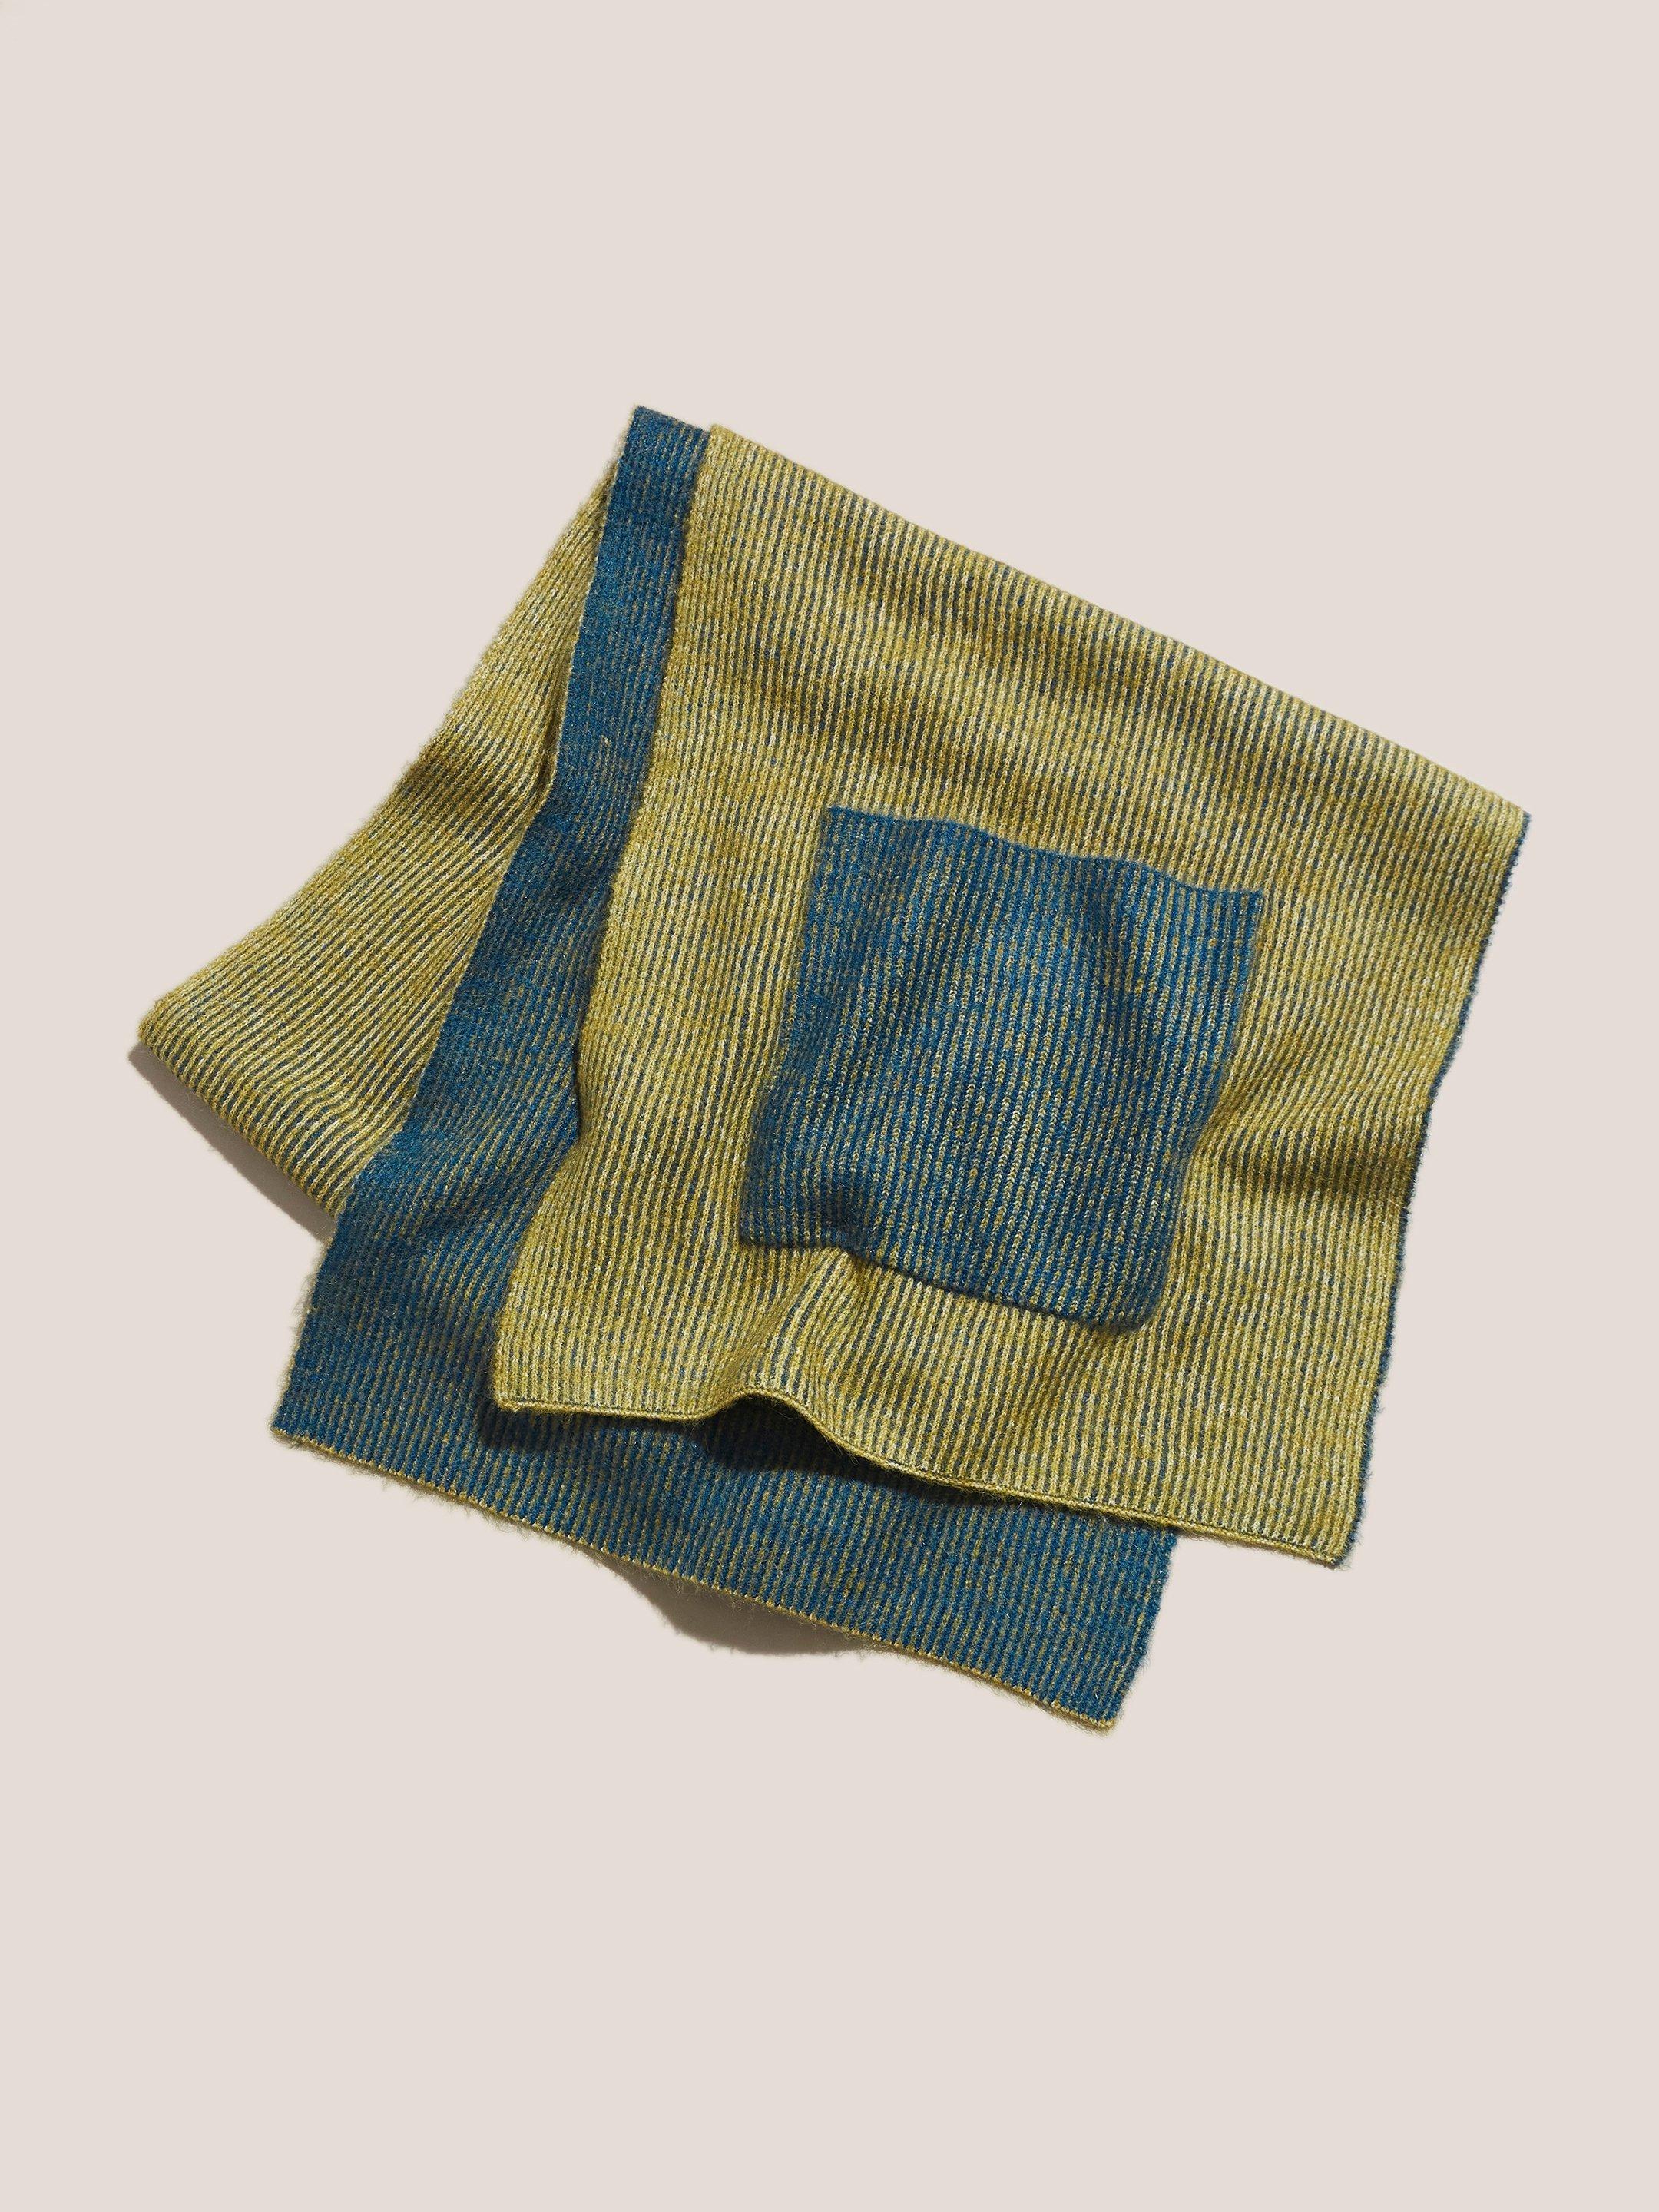 Knit Pocket Scarf in TEAL MLT - FLAT BACK